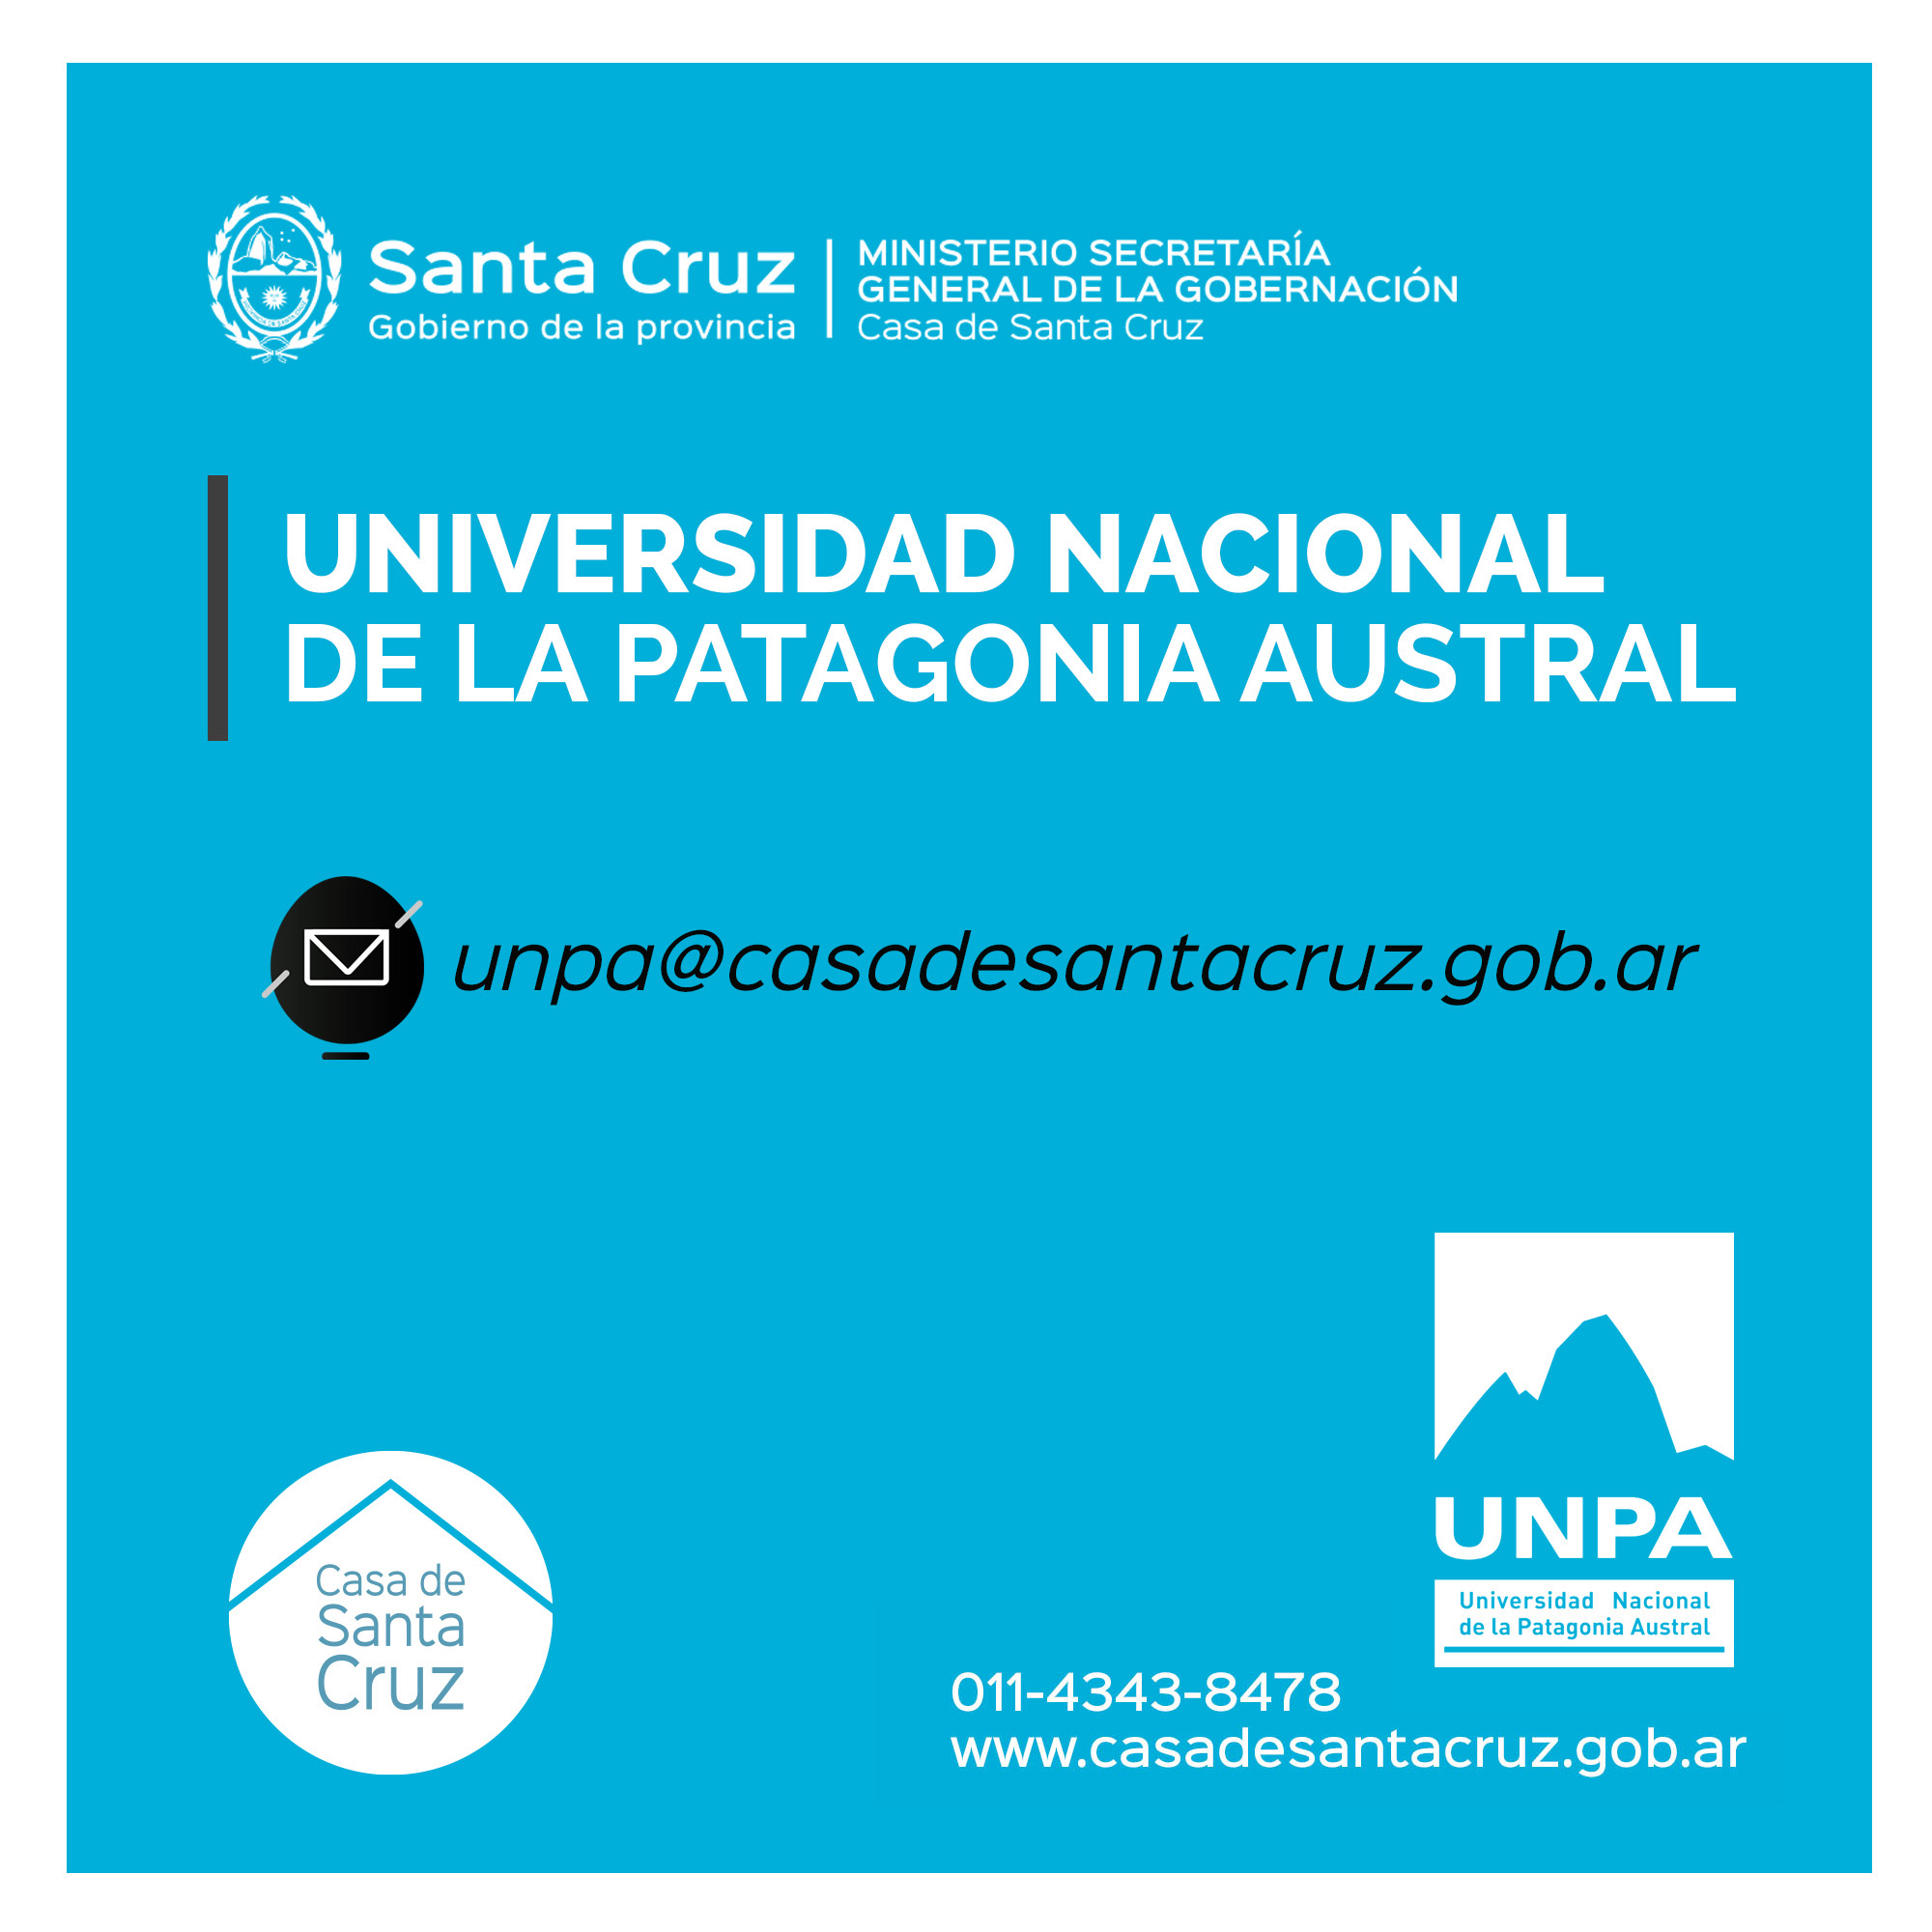 Universidad Nacional de la Patagonia Austral (UNPA)